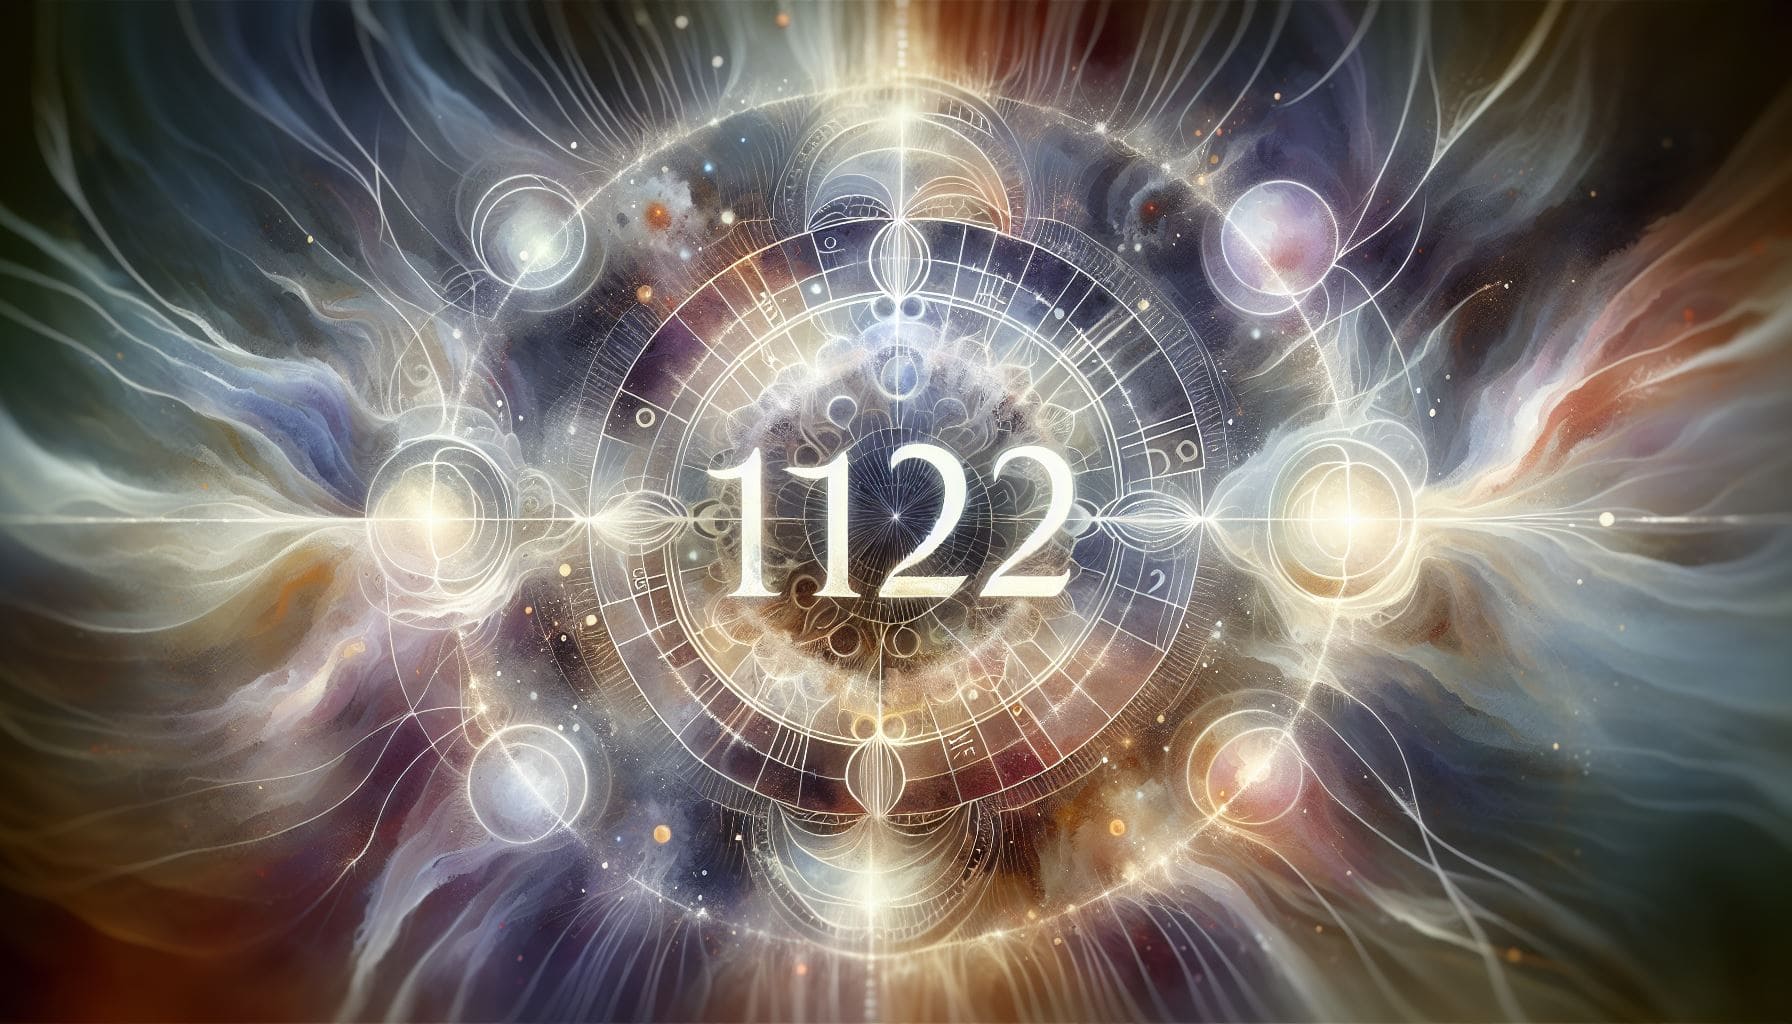 1122 significado espiritual